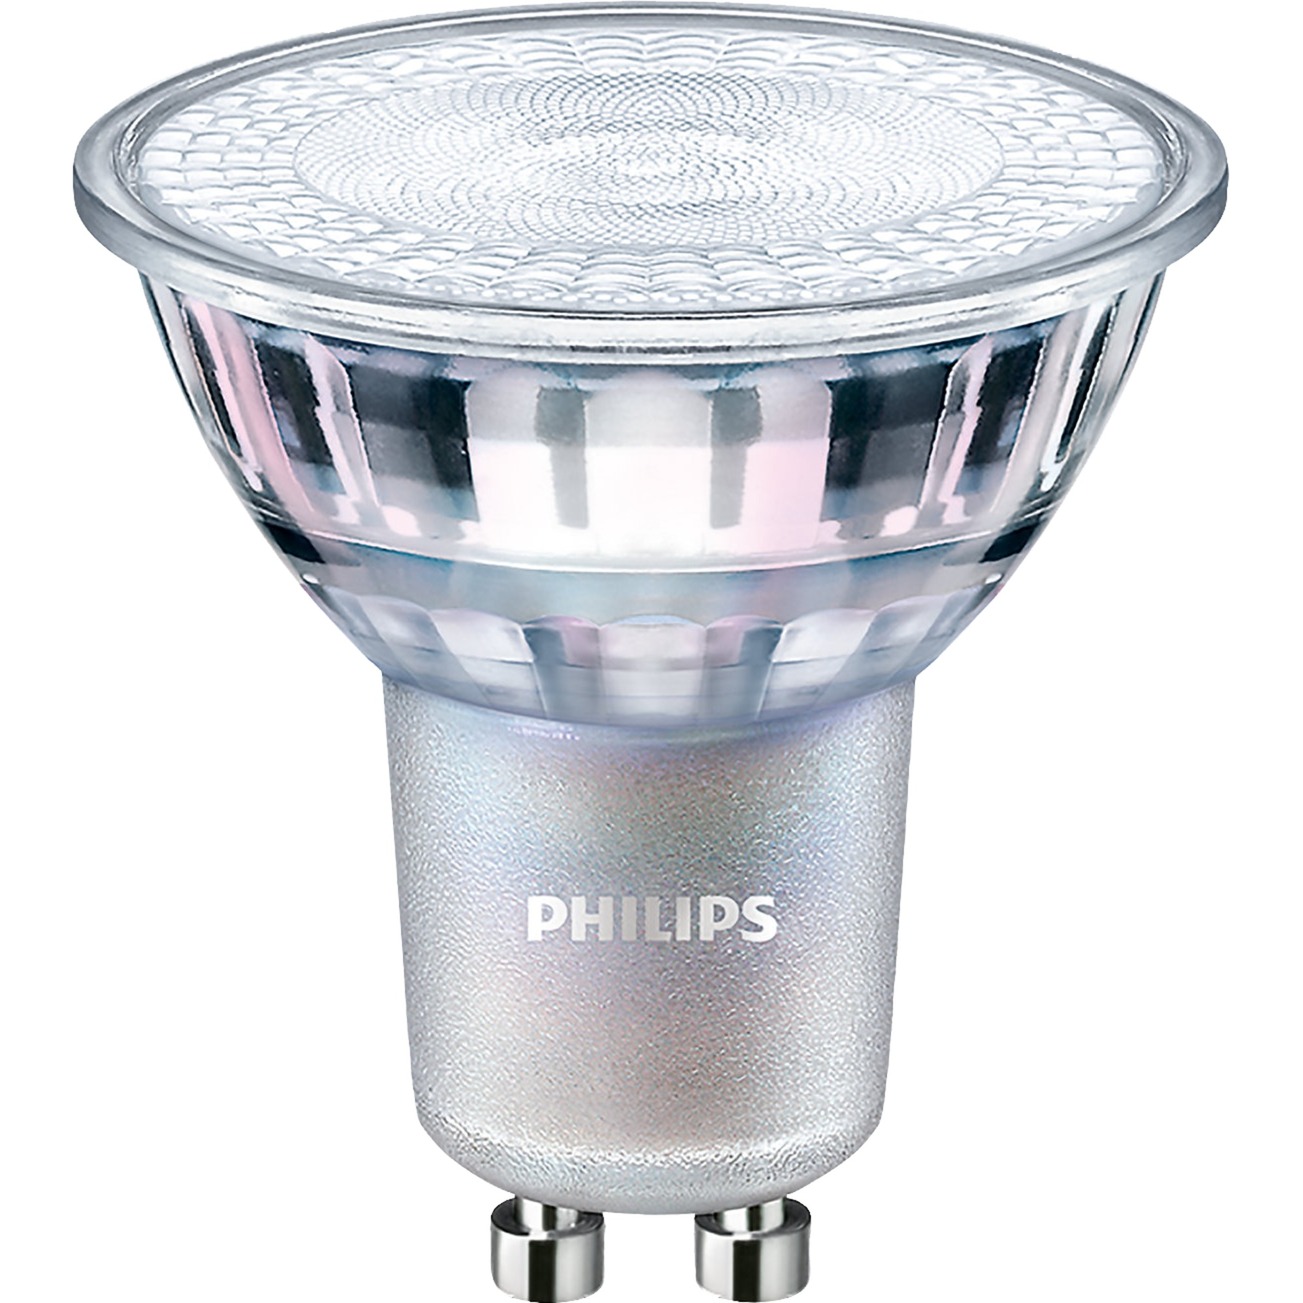 MASTER LEDspot Value D 3.7-35W GU10 930 36D, LED-Lampe von Philips